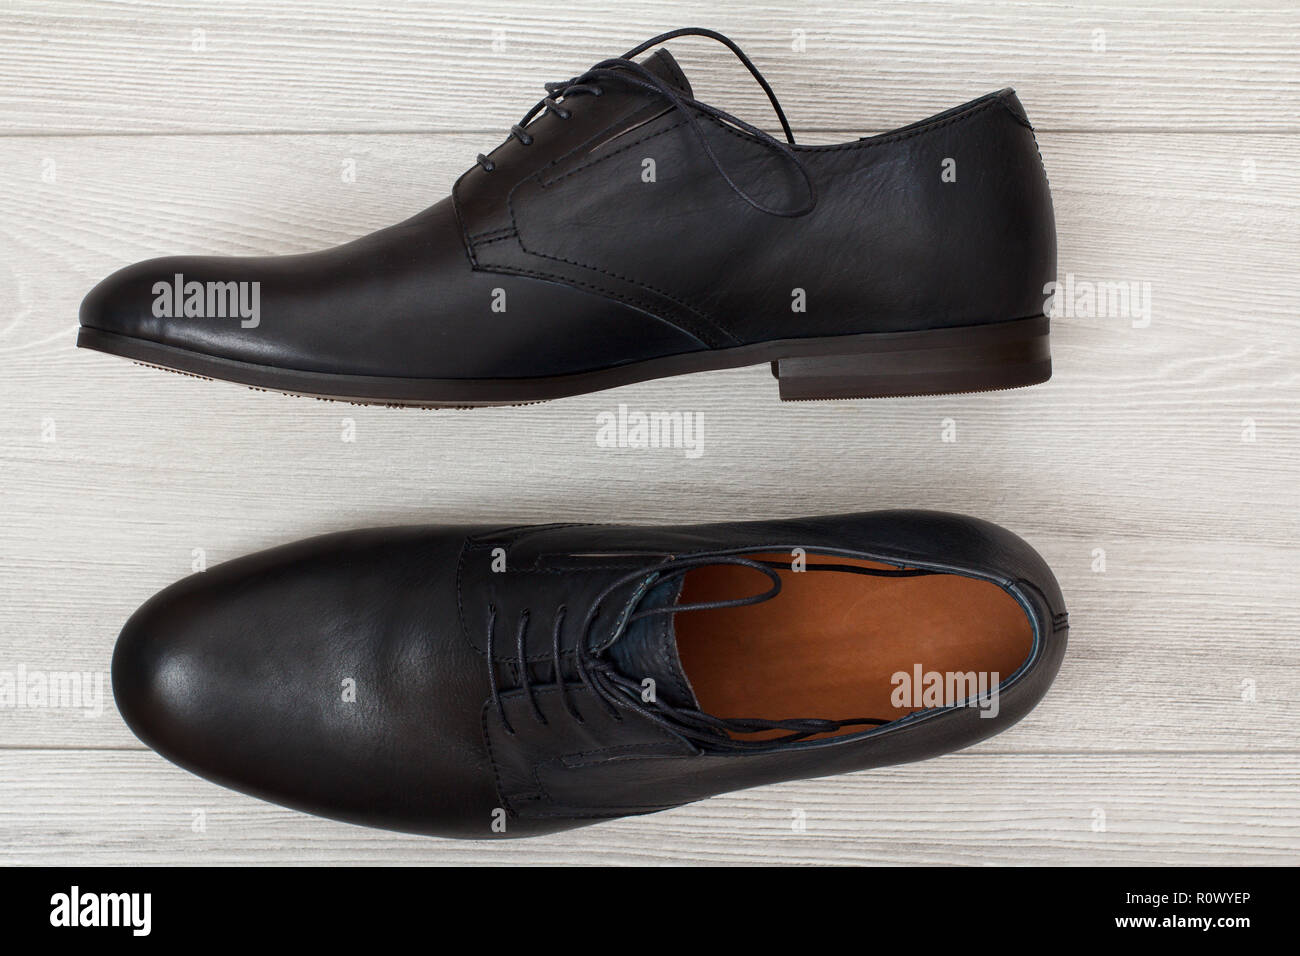 Paar schwarz Leder Herrenschuhe auf grau Holz- Hintergrund. Stilvolle und elegante  Schuhe für Männer. Ansicht von oben Stockfotografie - Alamy